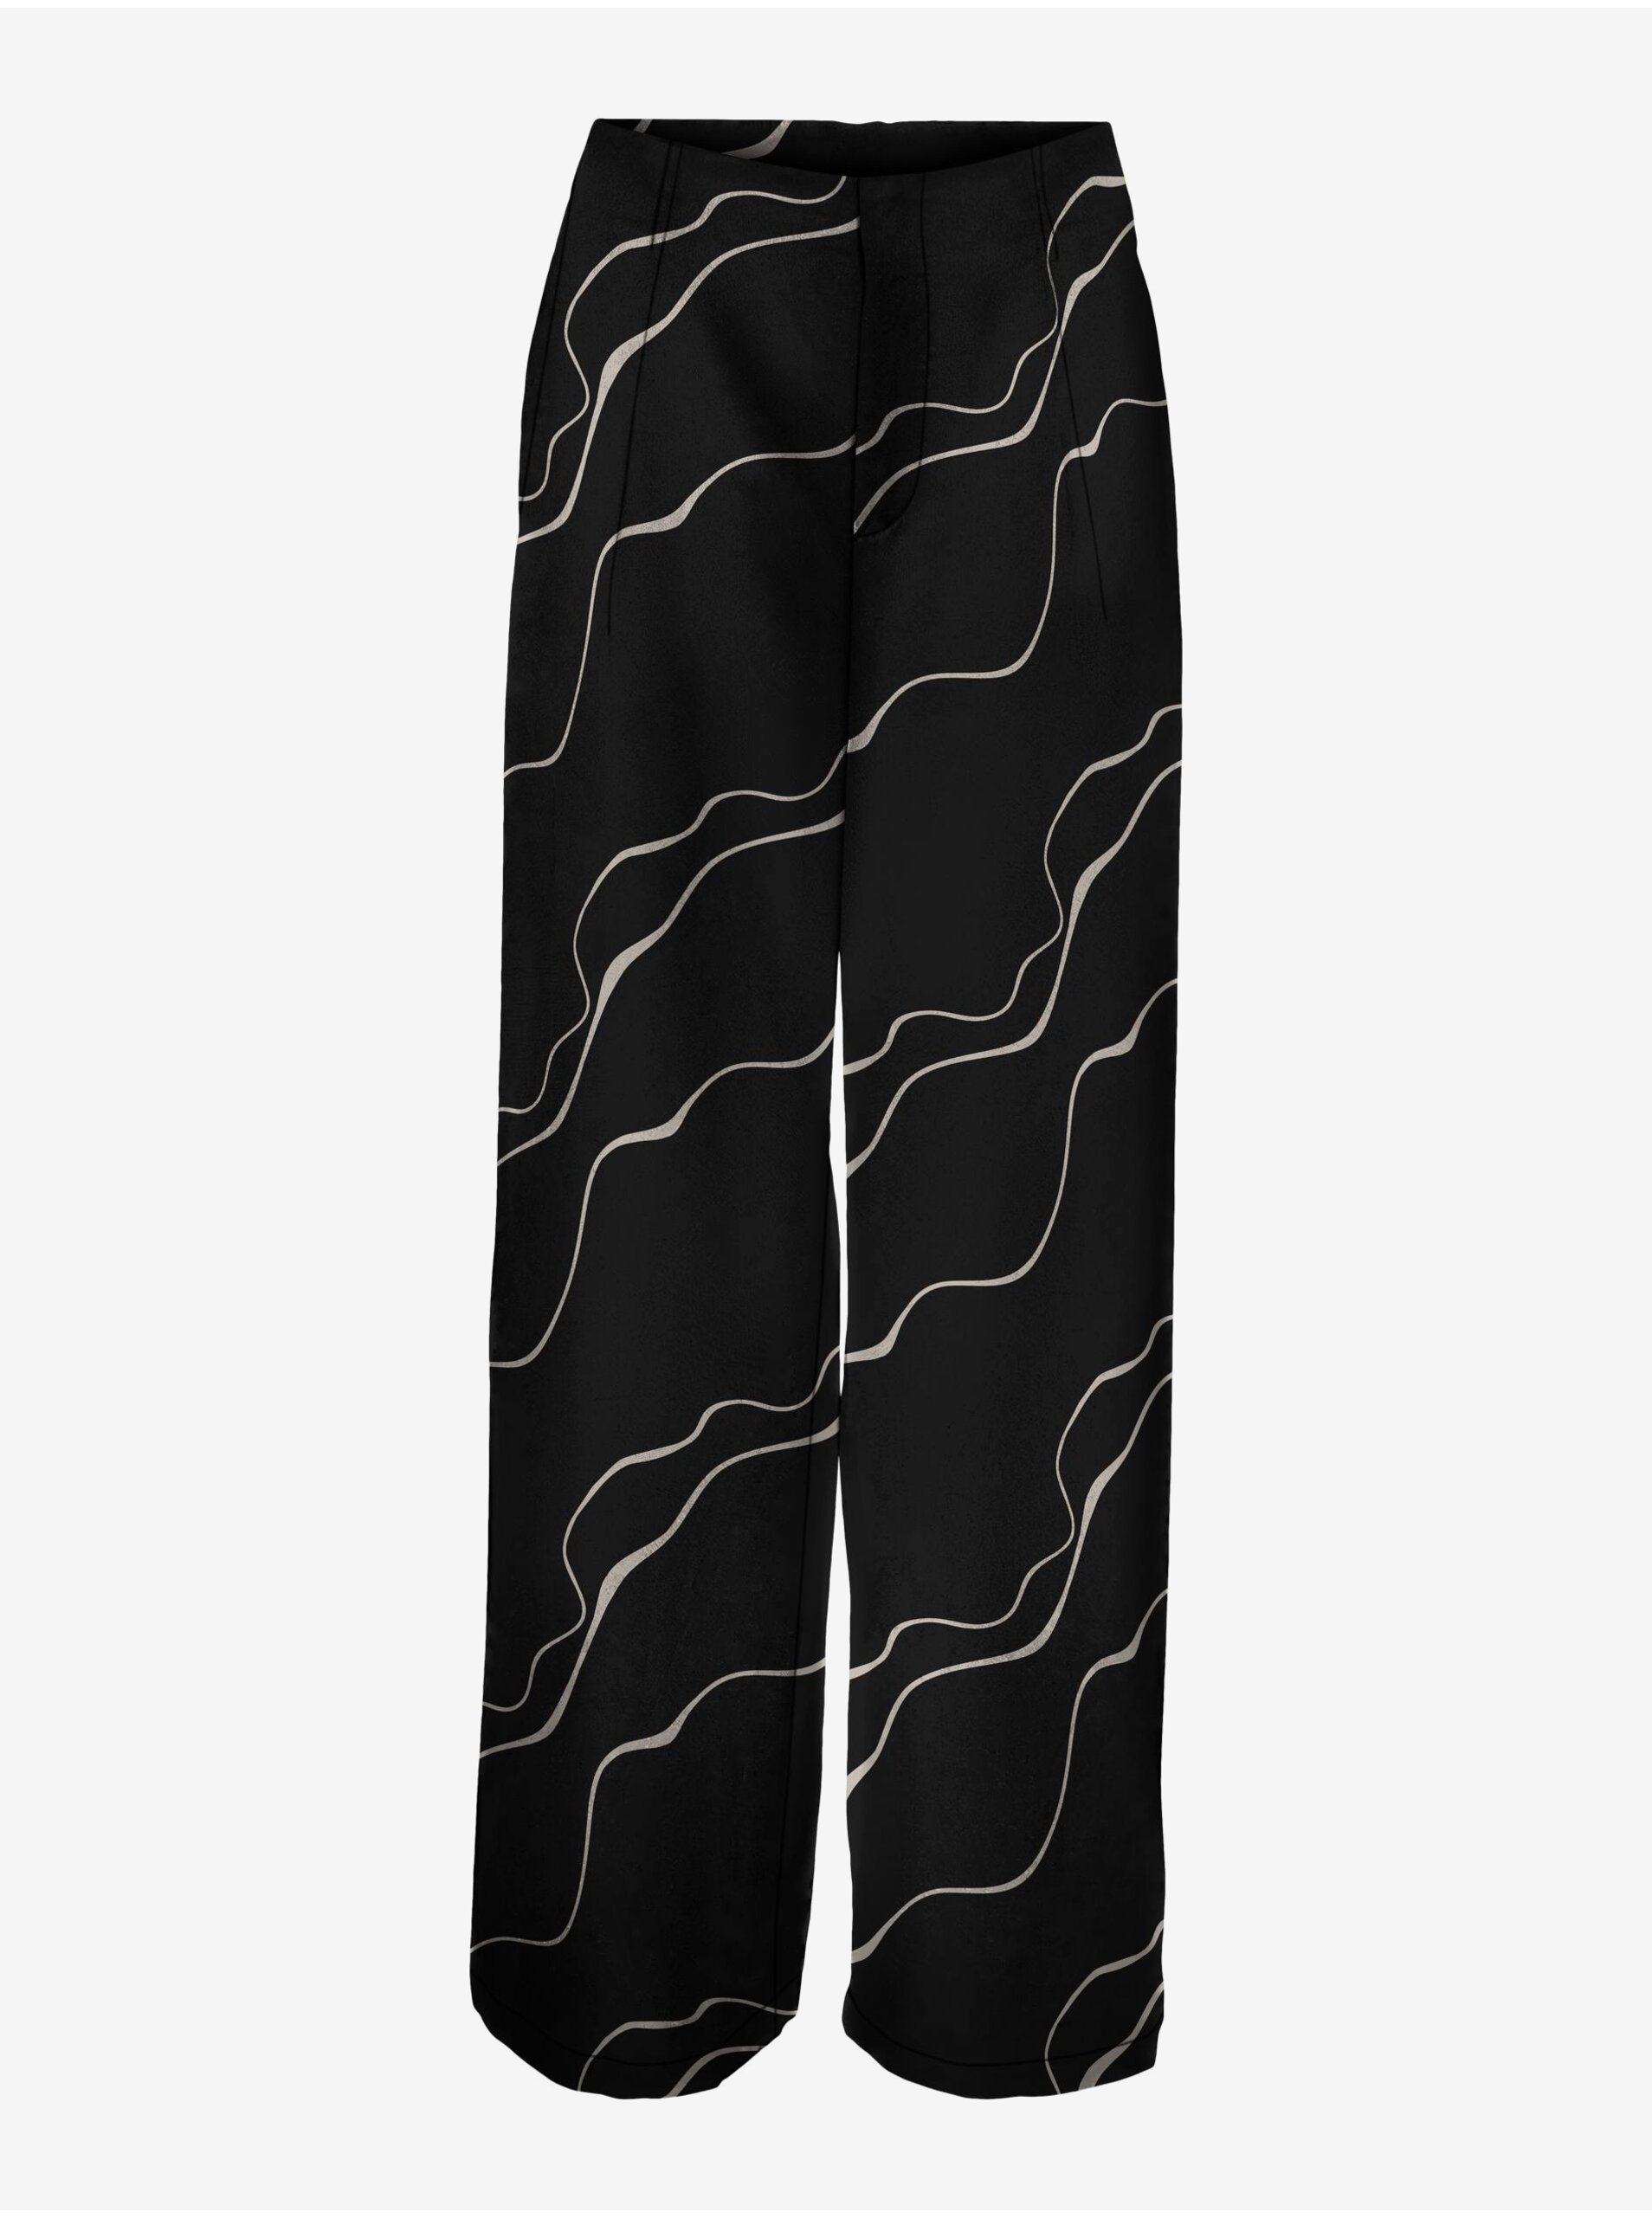 Women's black patterned trousers VERO MODA Merle - Women